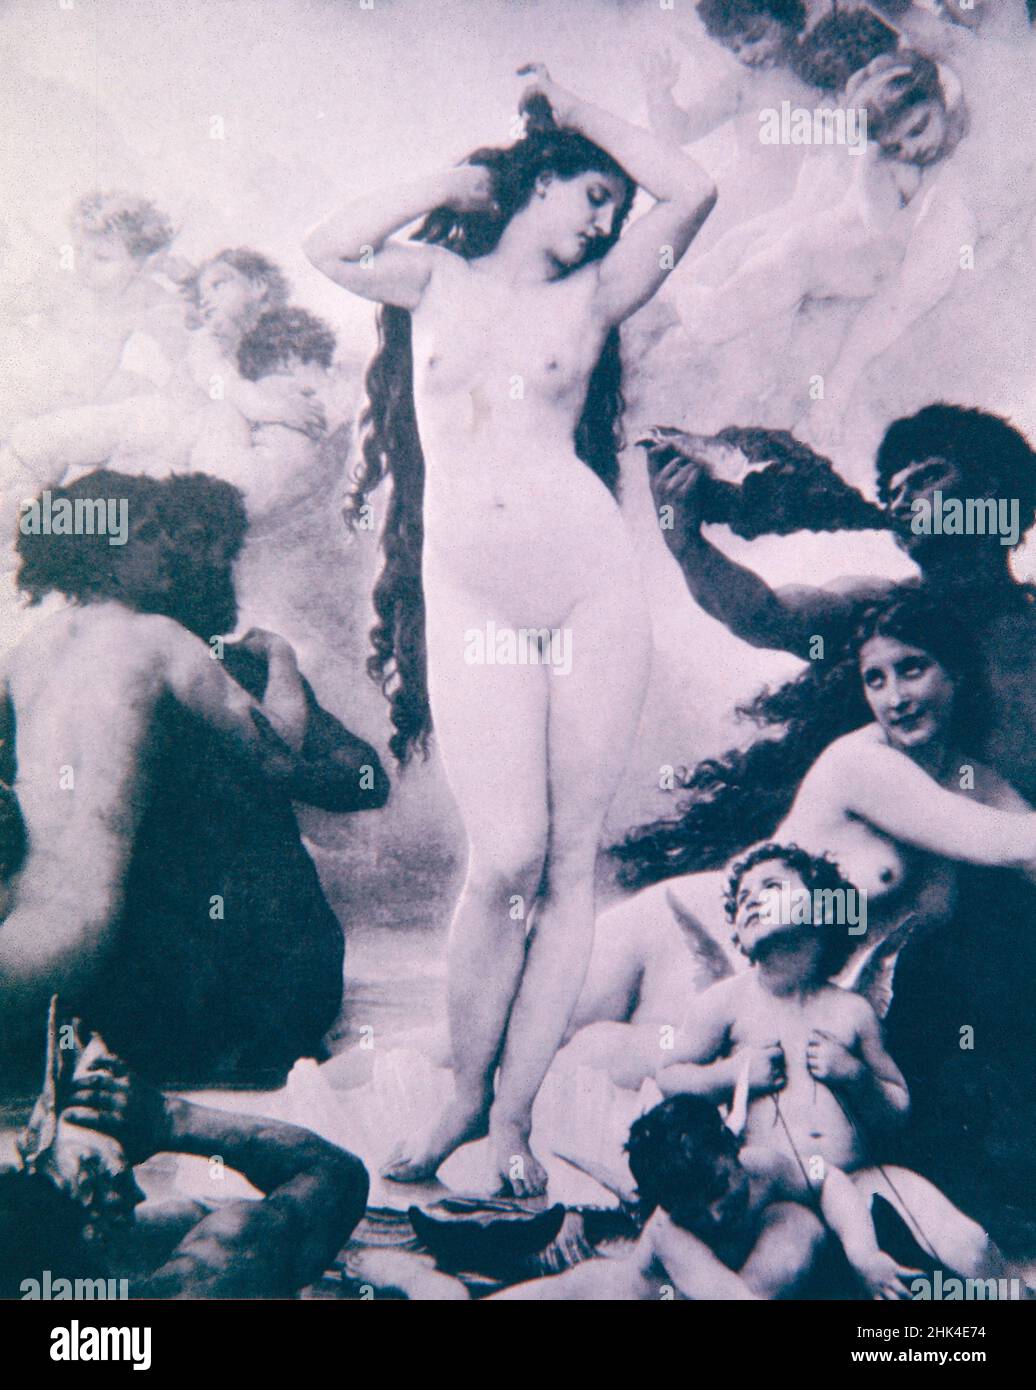 La naissance de Vénus, peinture de l'artiste français William-Adolphe Bouguereau, 1879 Banque D'Images